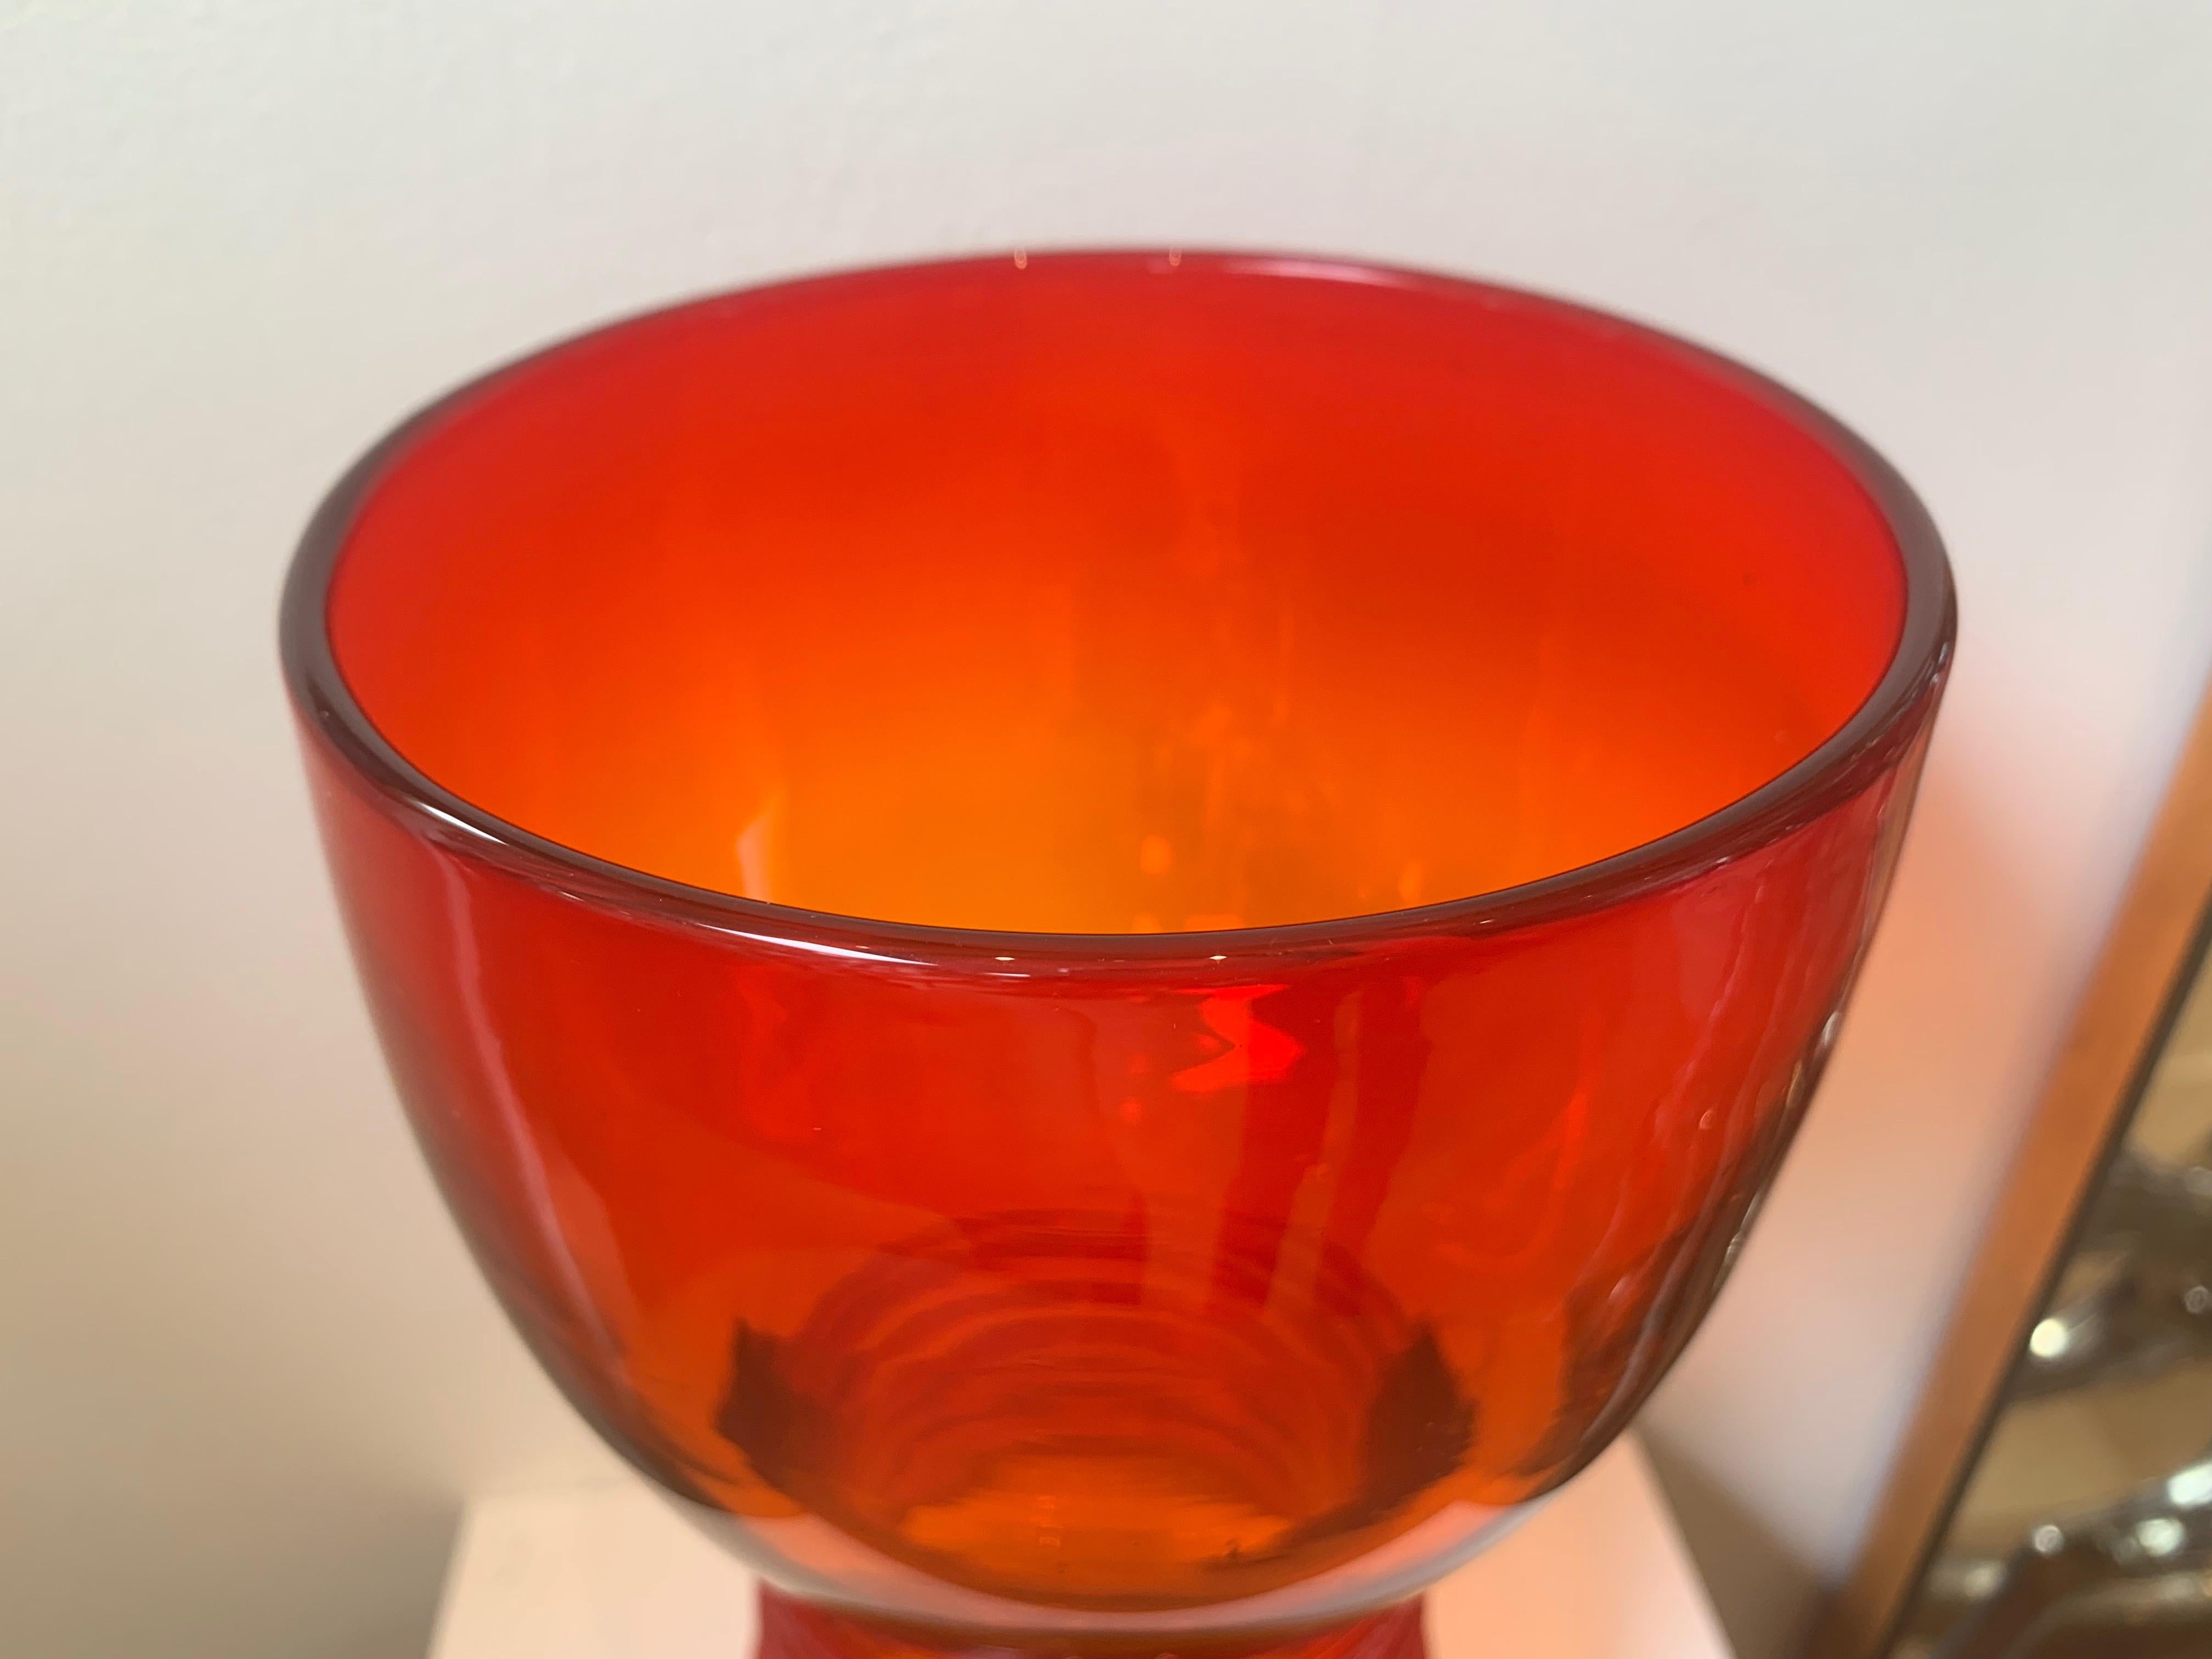 Blenko 1960s Art Red Glass Vase 
13.5